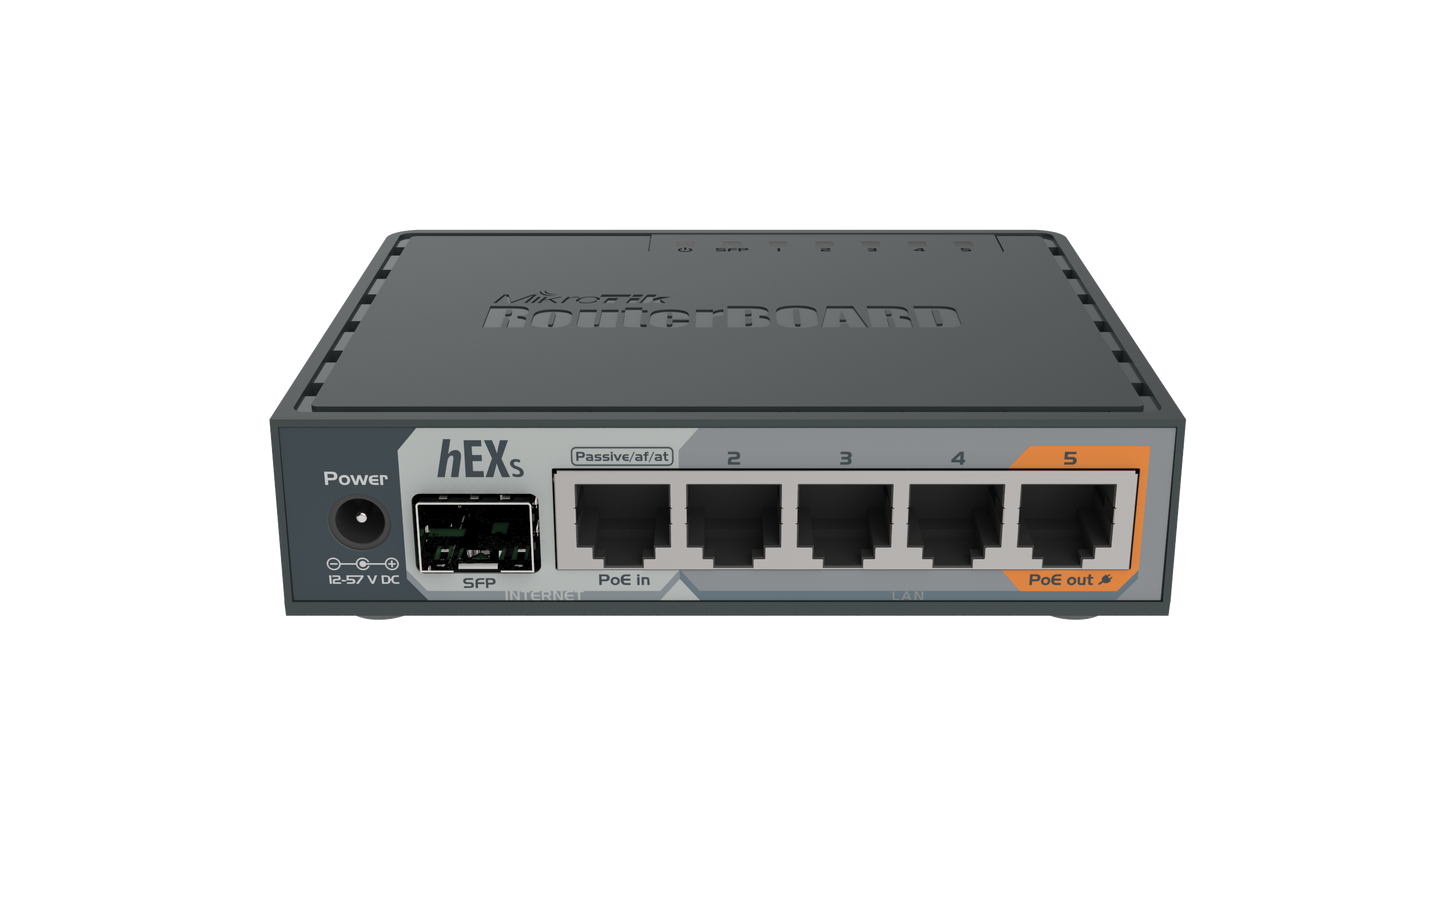 hEX S (RouterOS L4) with case (EU)